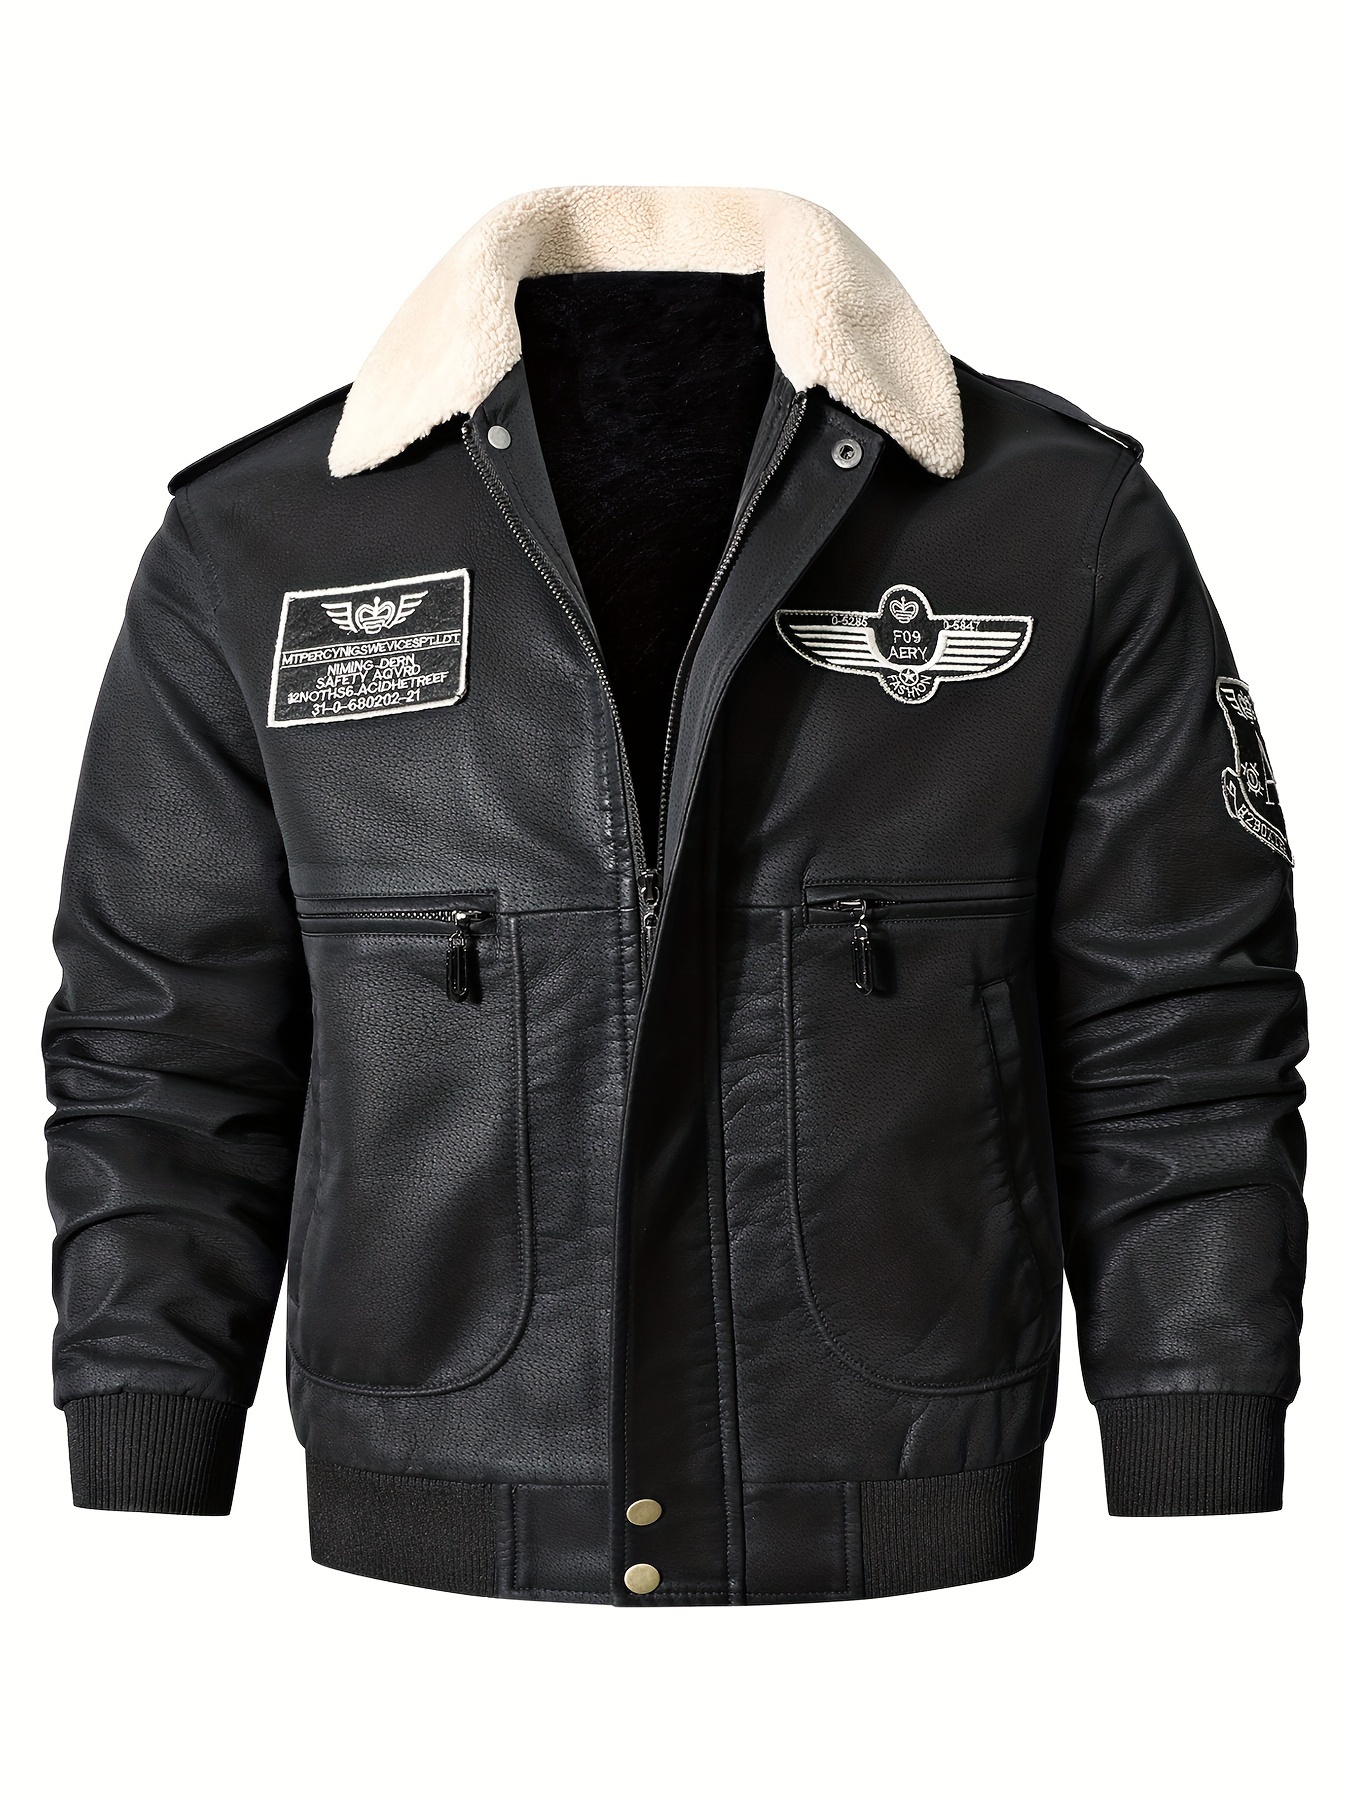 abrigo de moto, chaqueta de moto para hombre, chaqueta larga para moto